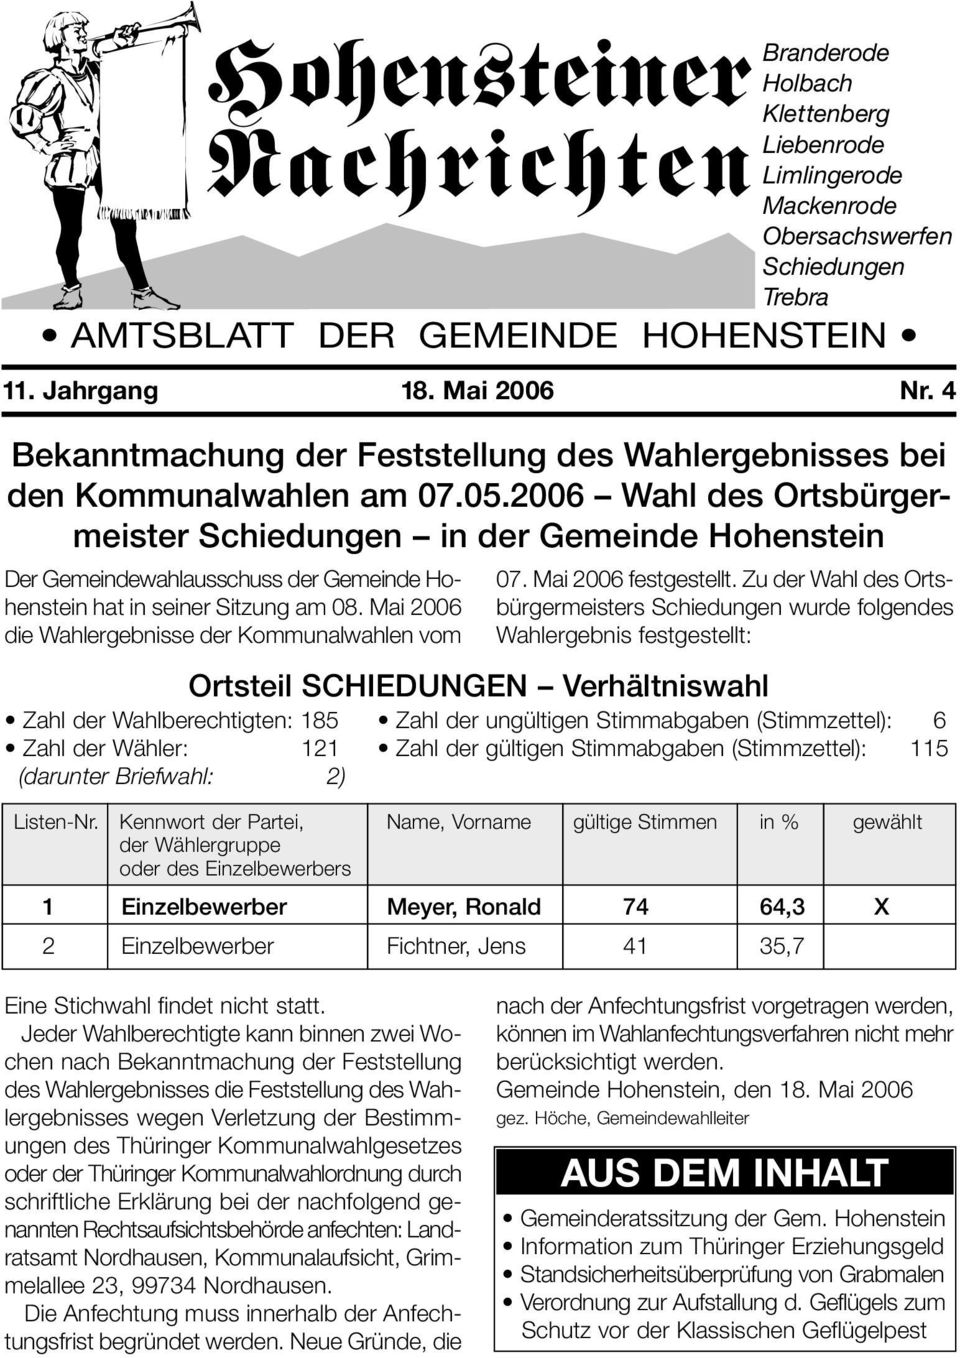 2006 Wahl des Ortsbürgermeister Schiedungen in der Gemeinde Hohenstein Der Gemeindewahlausschuss der Gemeinde Hohenstein hat in seiner Sitzung am 08.